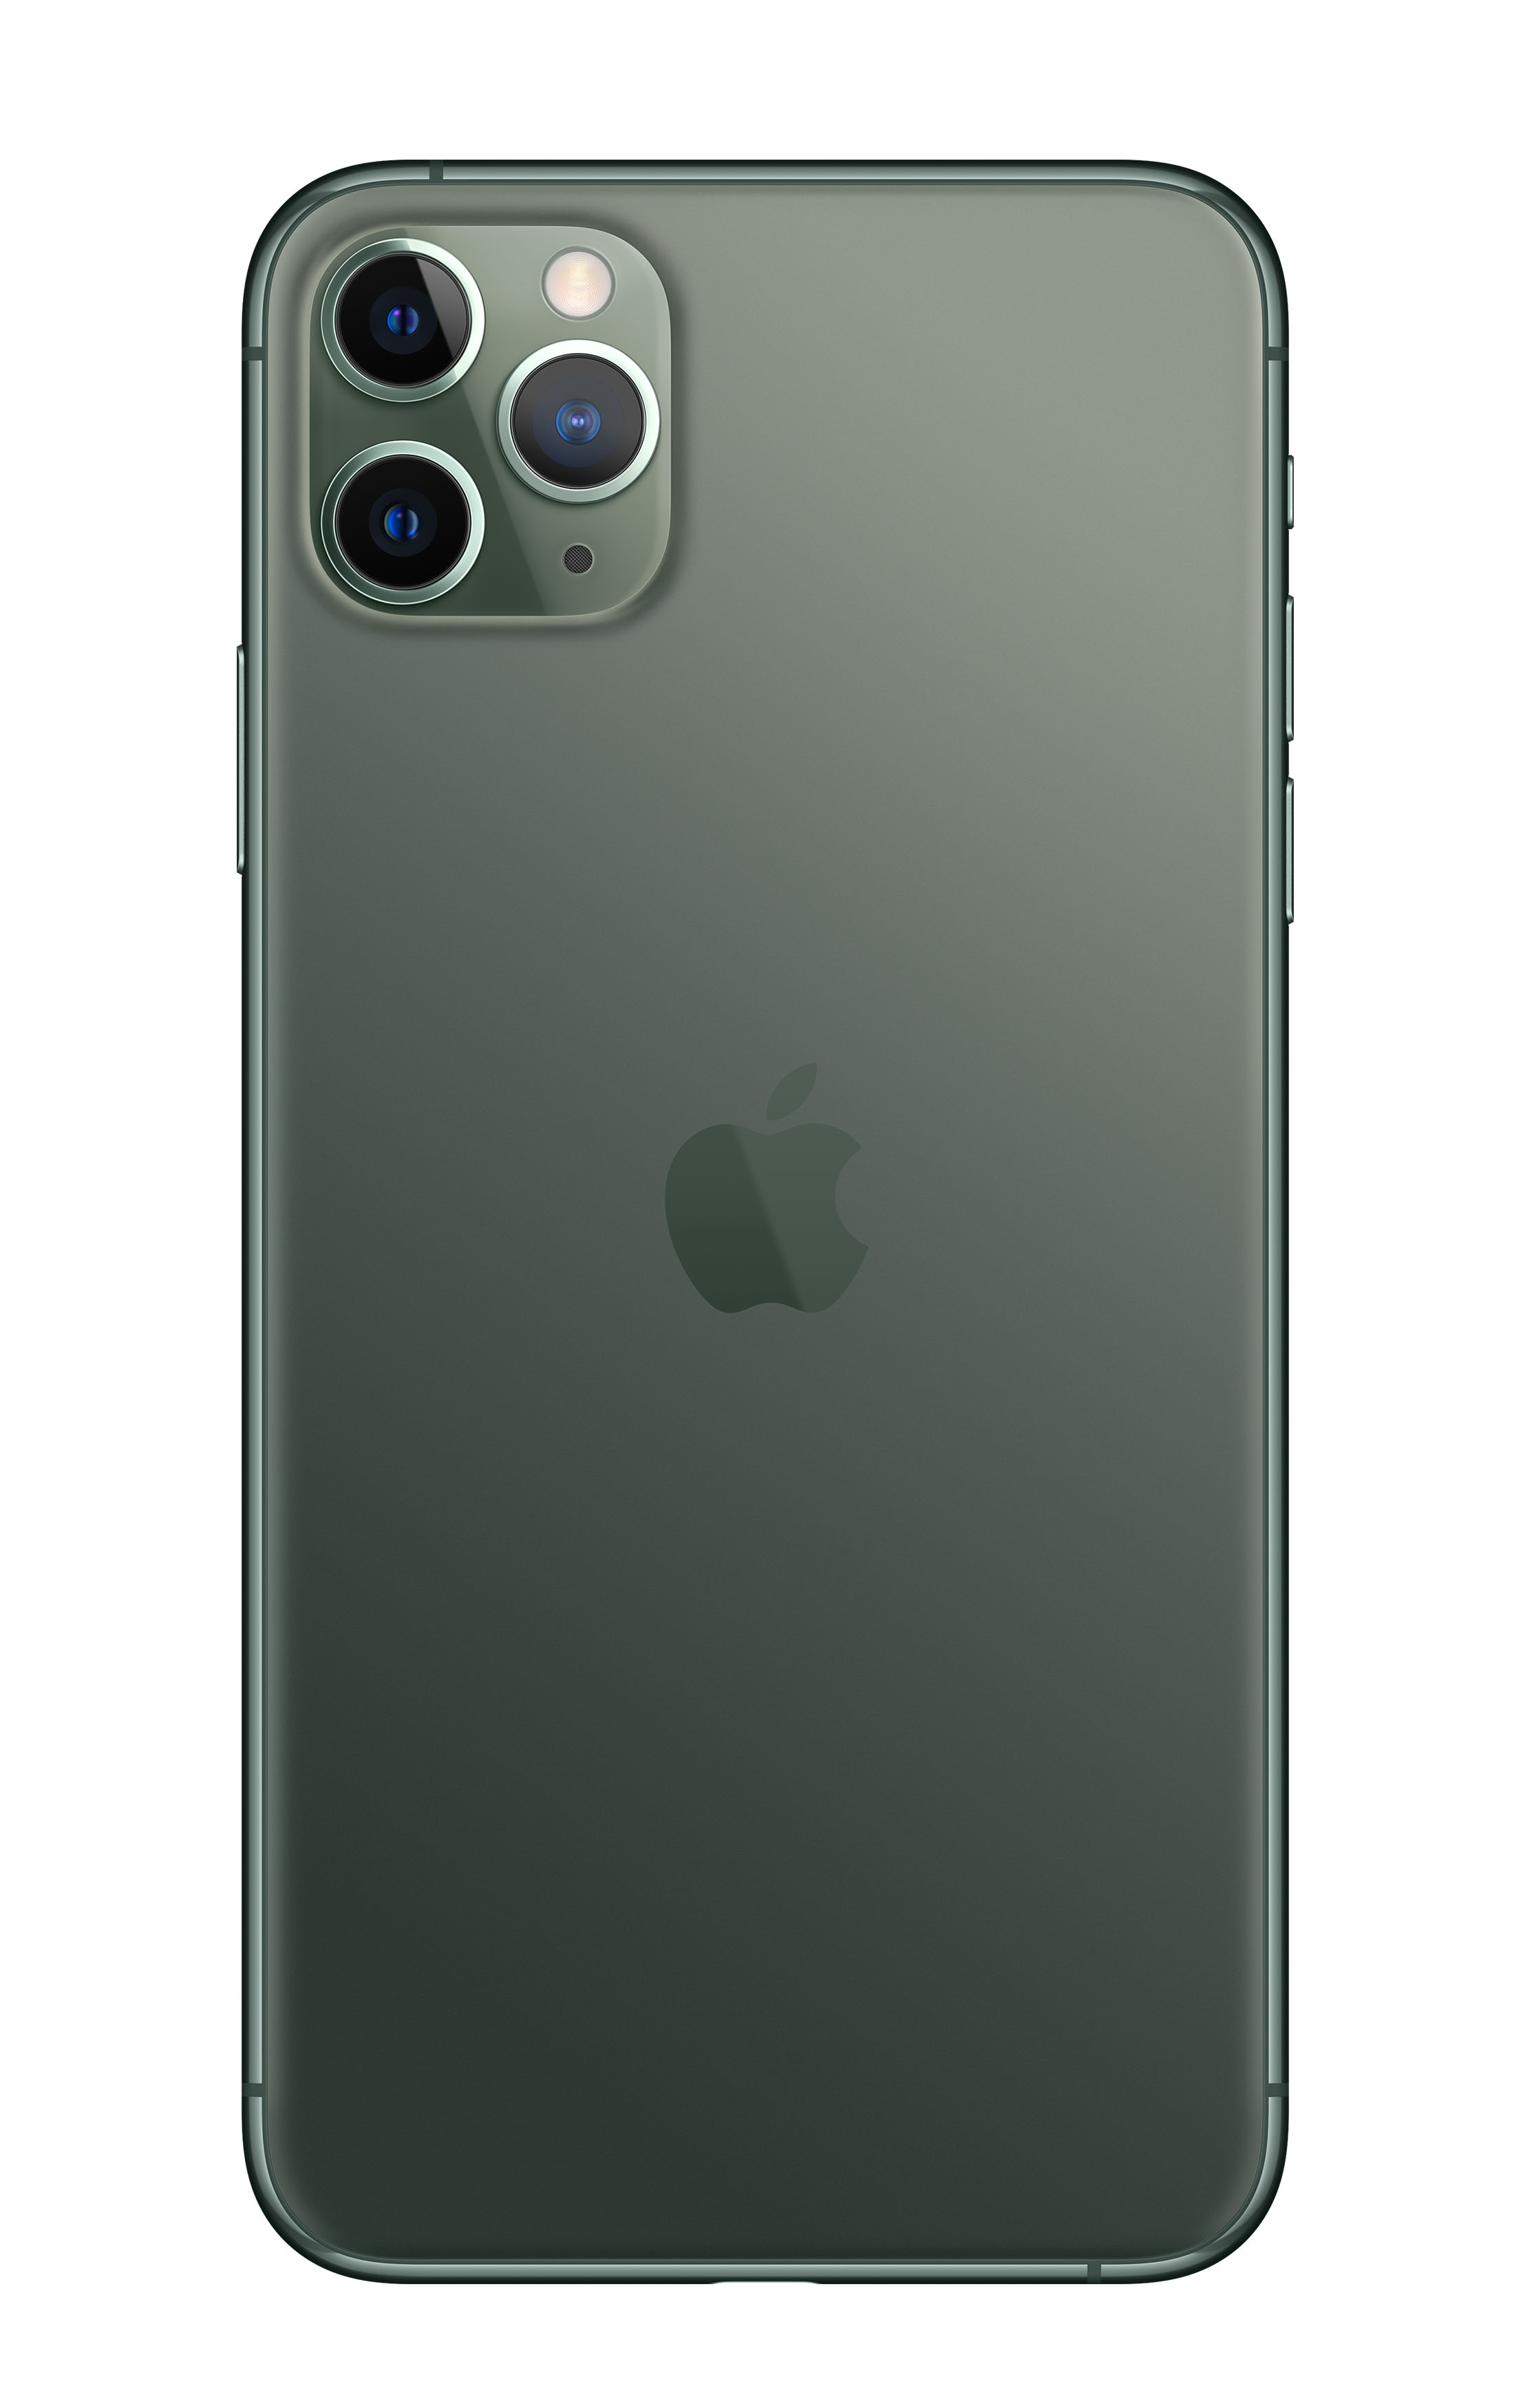 Grün GB SIM 11 iPhone Pro REFURBISHED Max Dual APPLE (*) 64